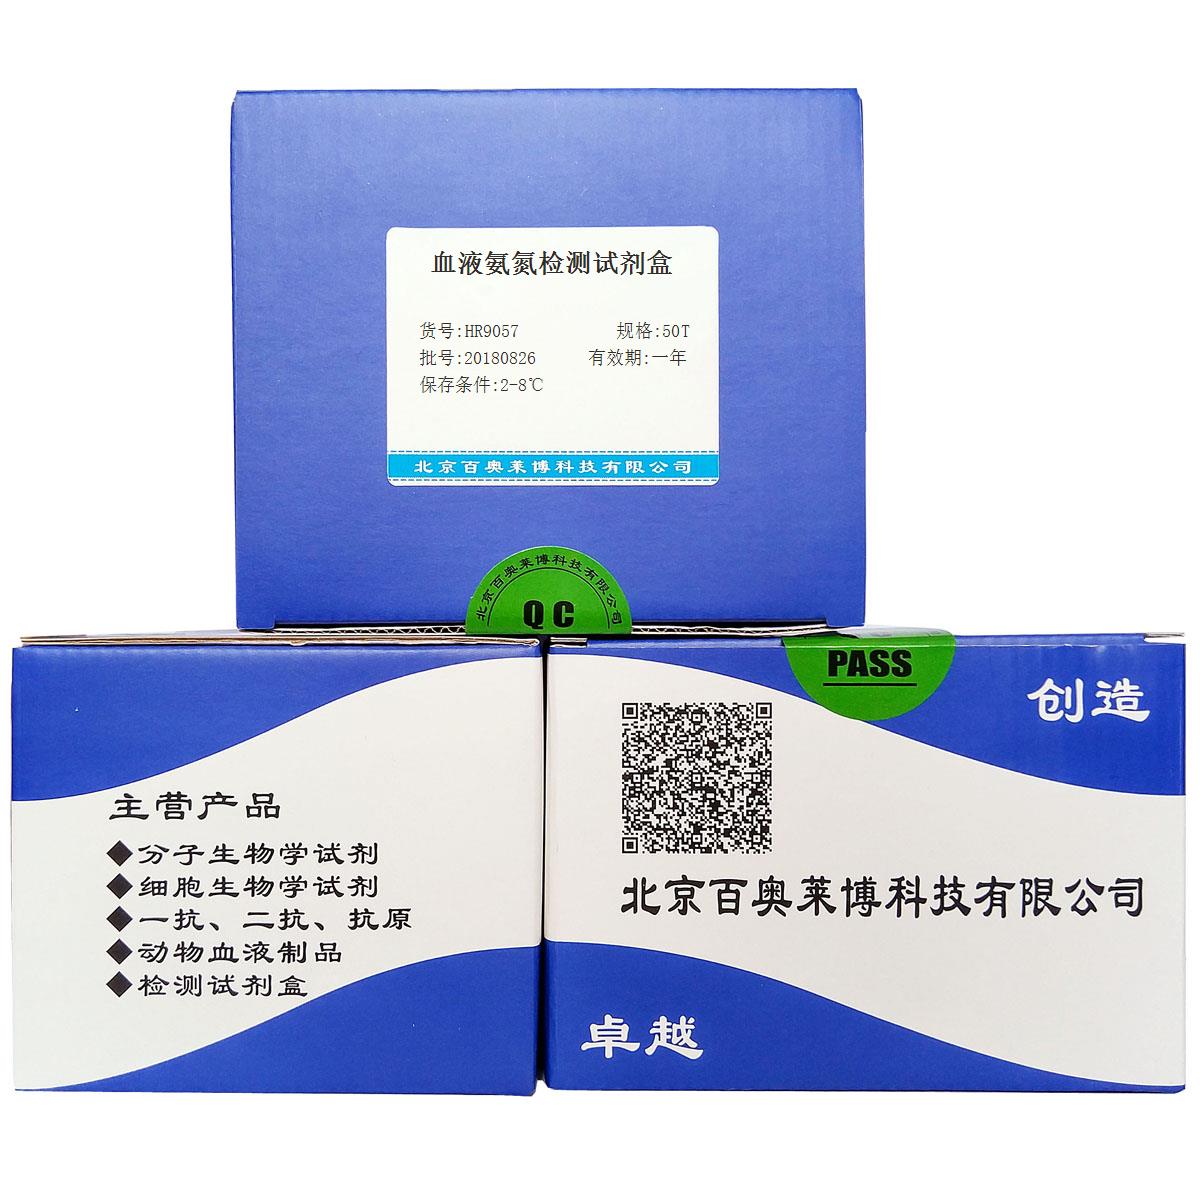 血液氨氮检测试剂盒